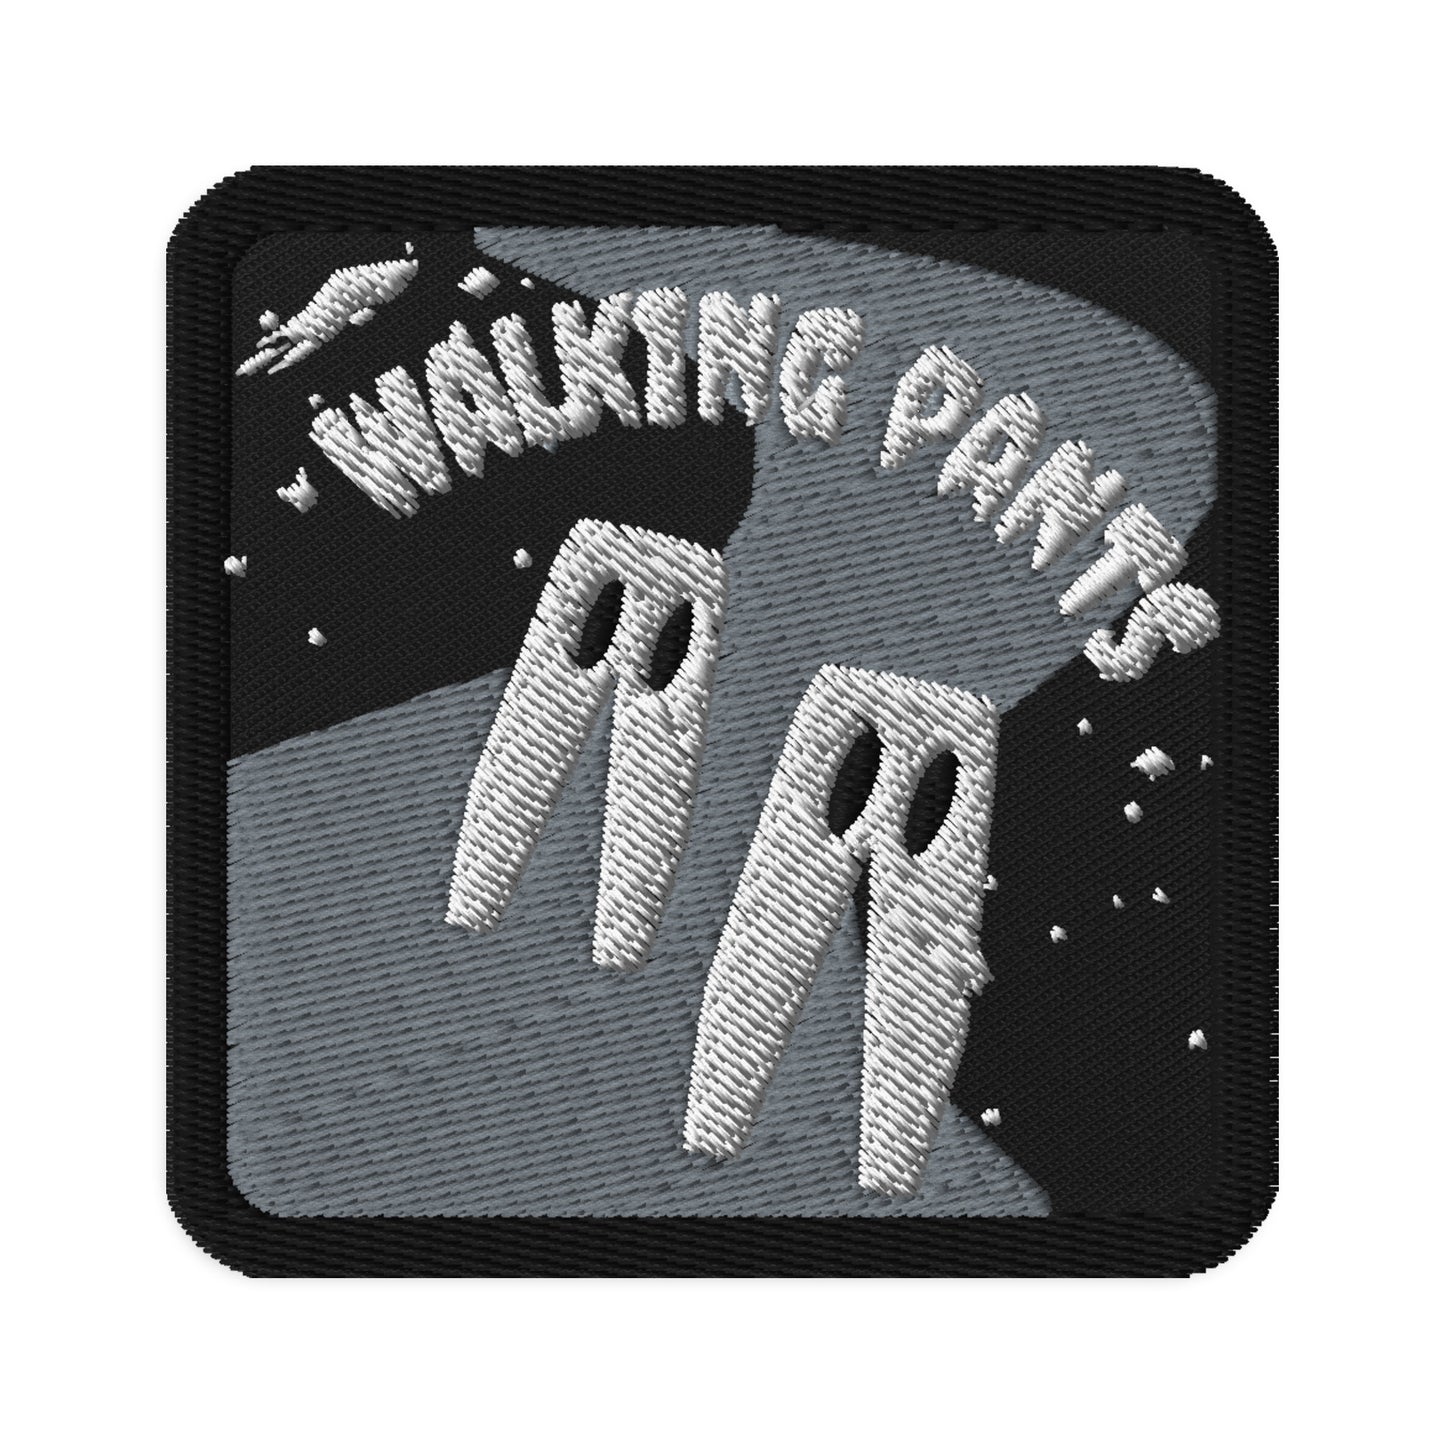 'Walking Pants' Patch